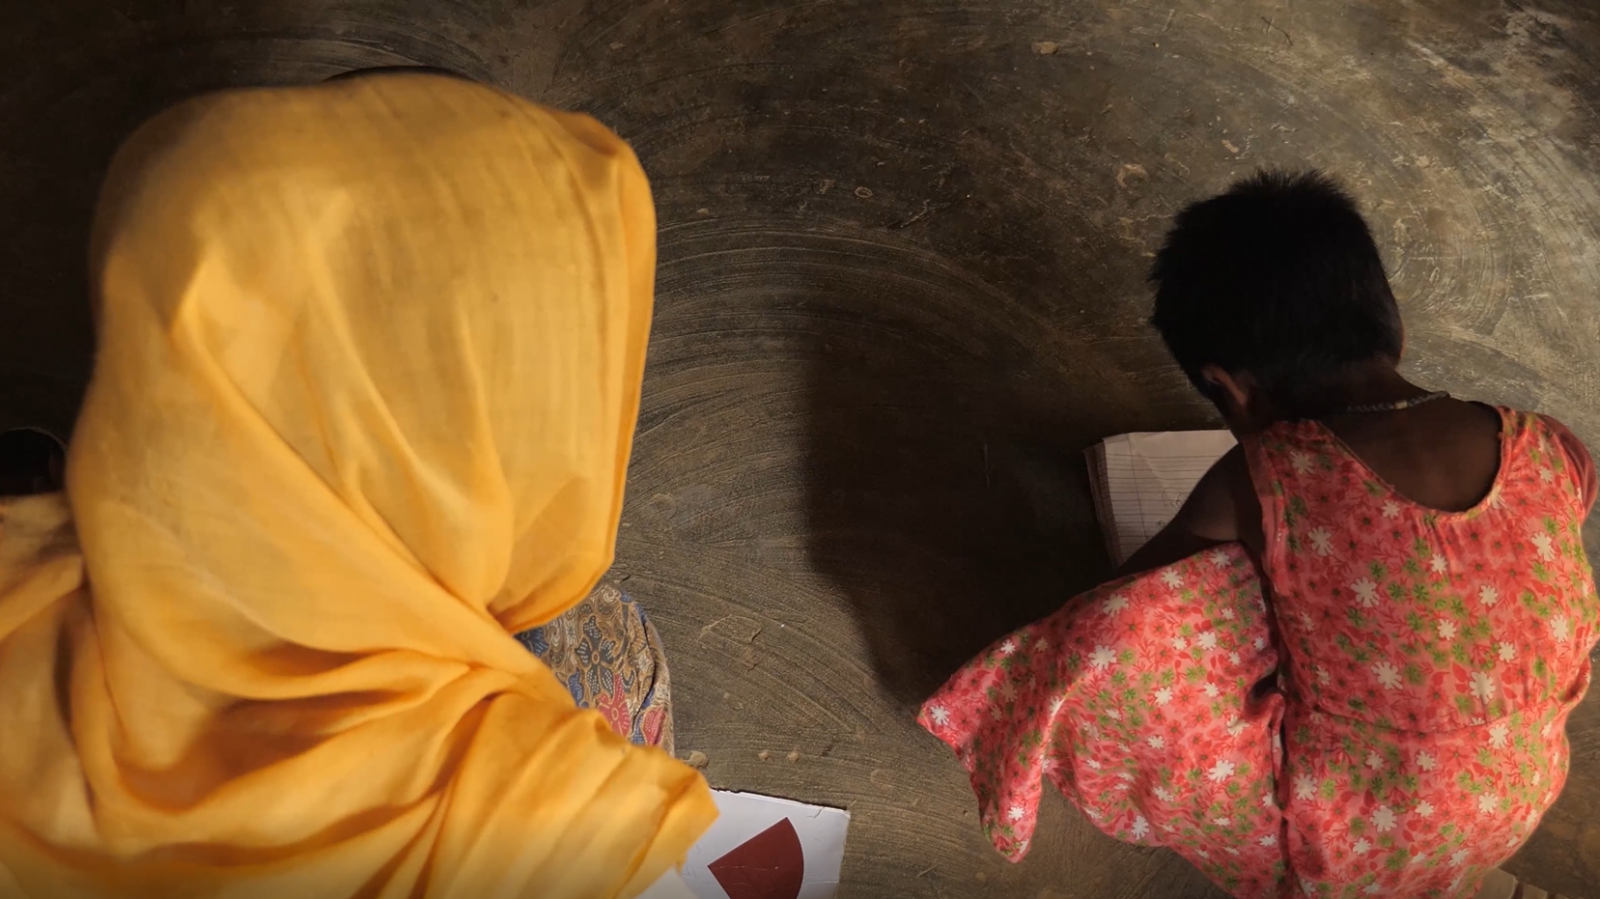 Azuma vigila a su hija Lala Bibi en un campamento de refugiados rohingya en Bangladesh. Tiene miedo de que desaparezca como su hermana Asma, víctima de la trata de personas.